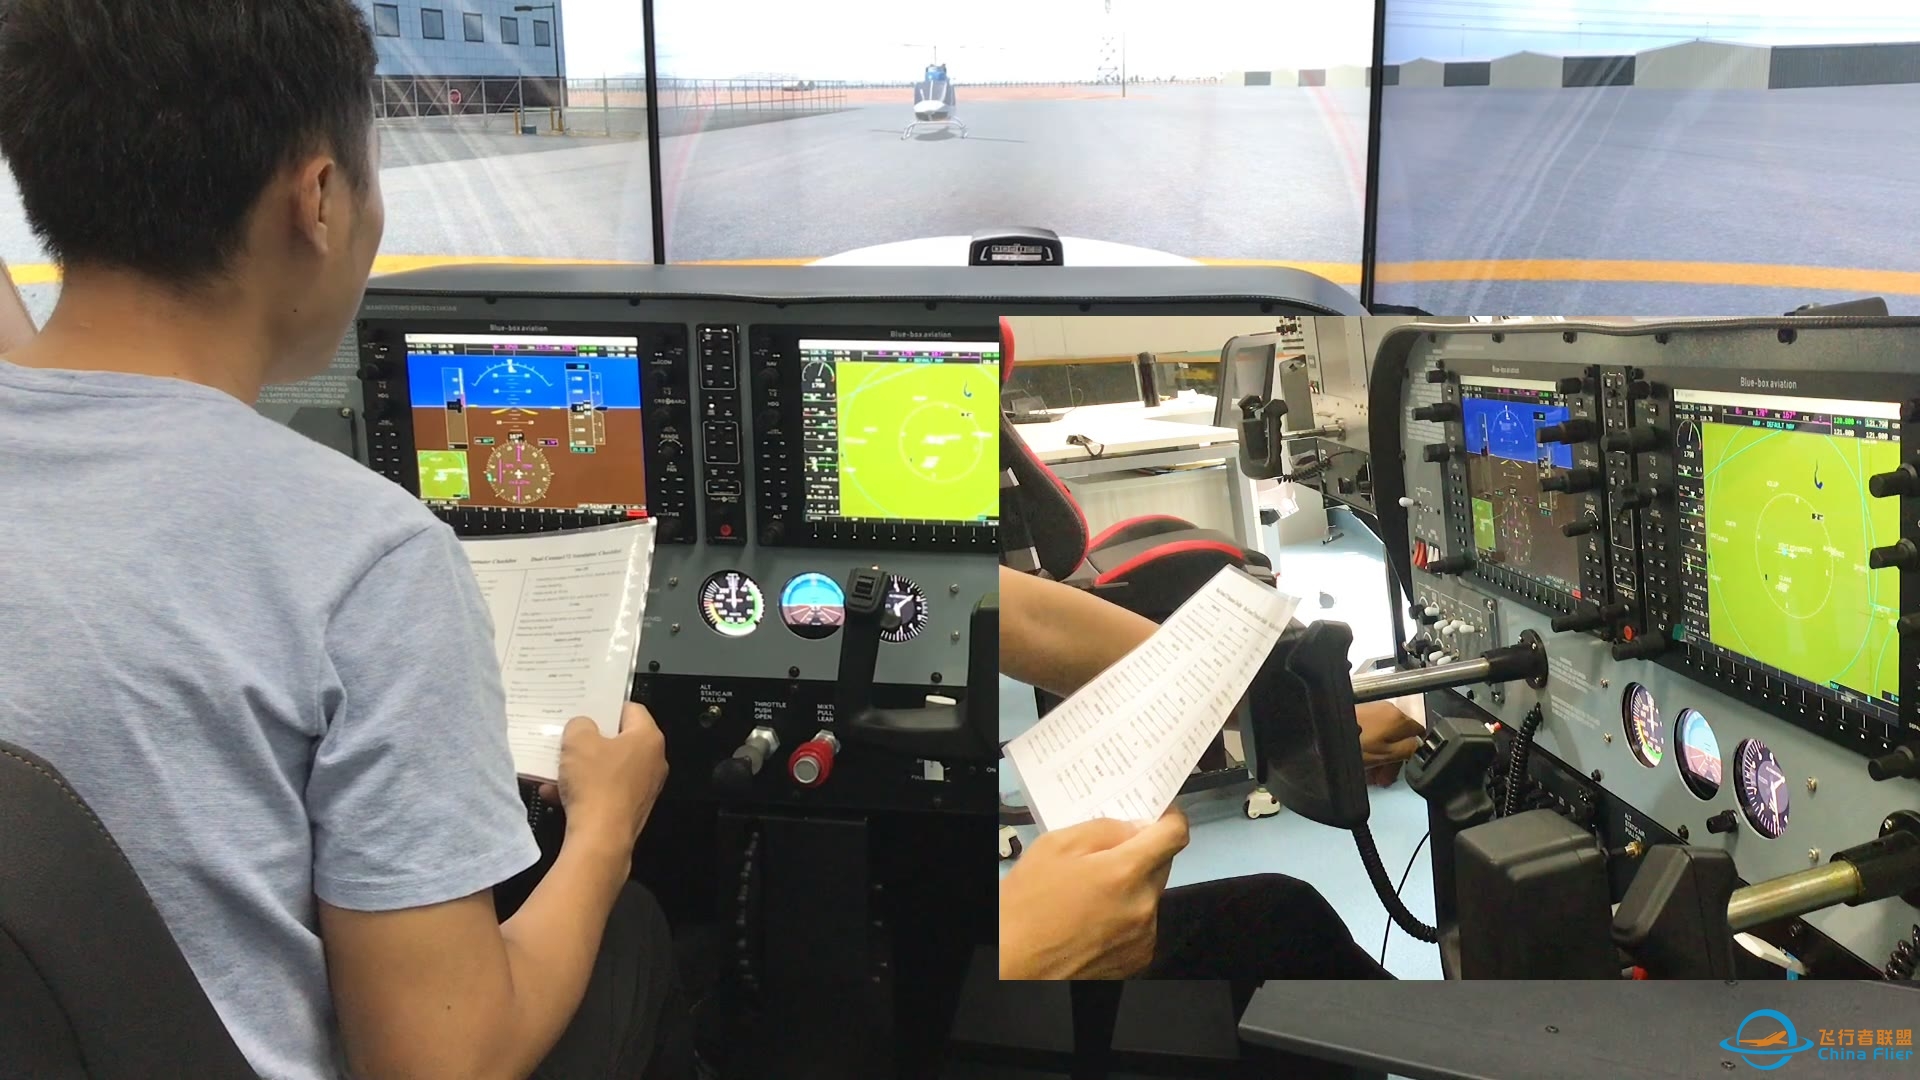 简单的飞行模拟线路介绍，基于Cessna172以及checklist。-2208 